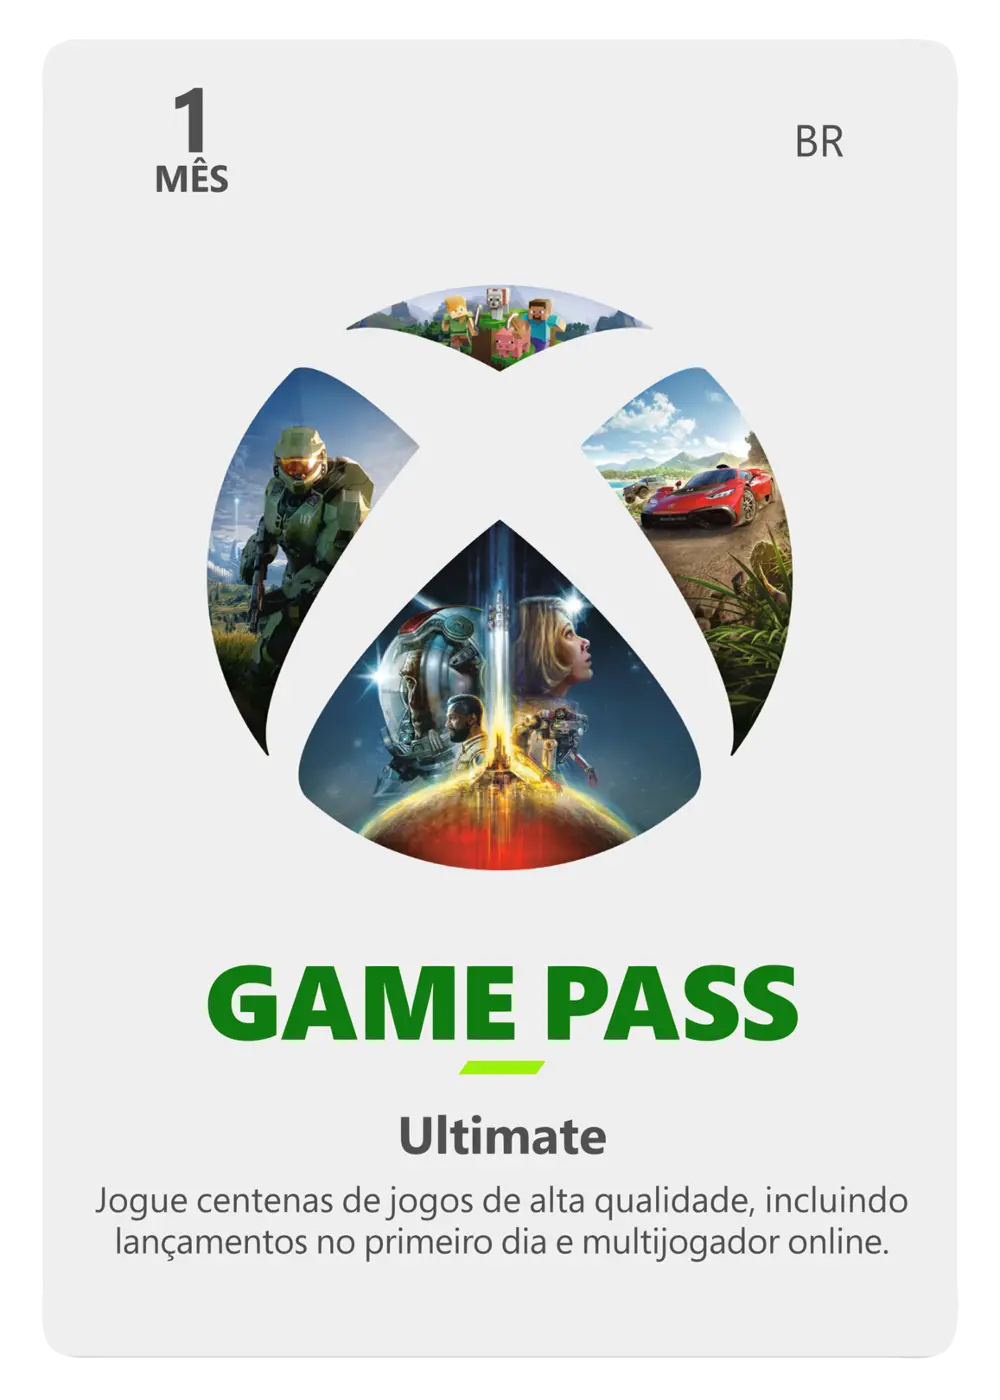 Xbox Game Pass Ultimate 1 Mês Código 25 Dígitos - Videogames